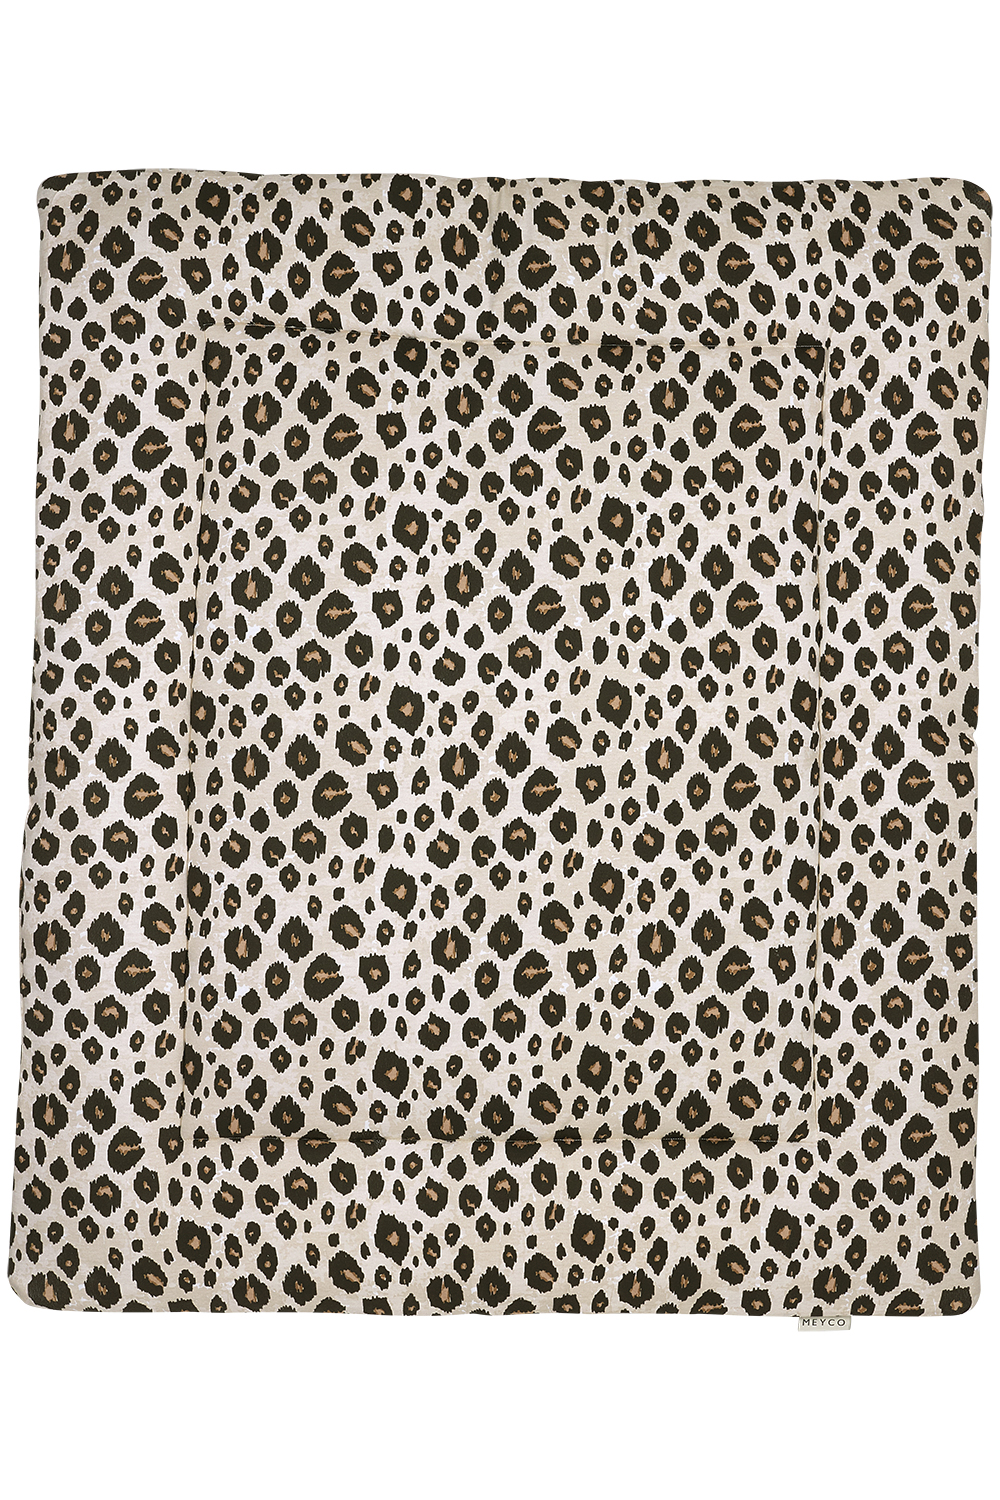 Playpen mattress Leopard - sand melange - 80x100cm